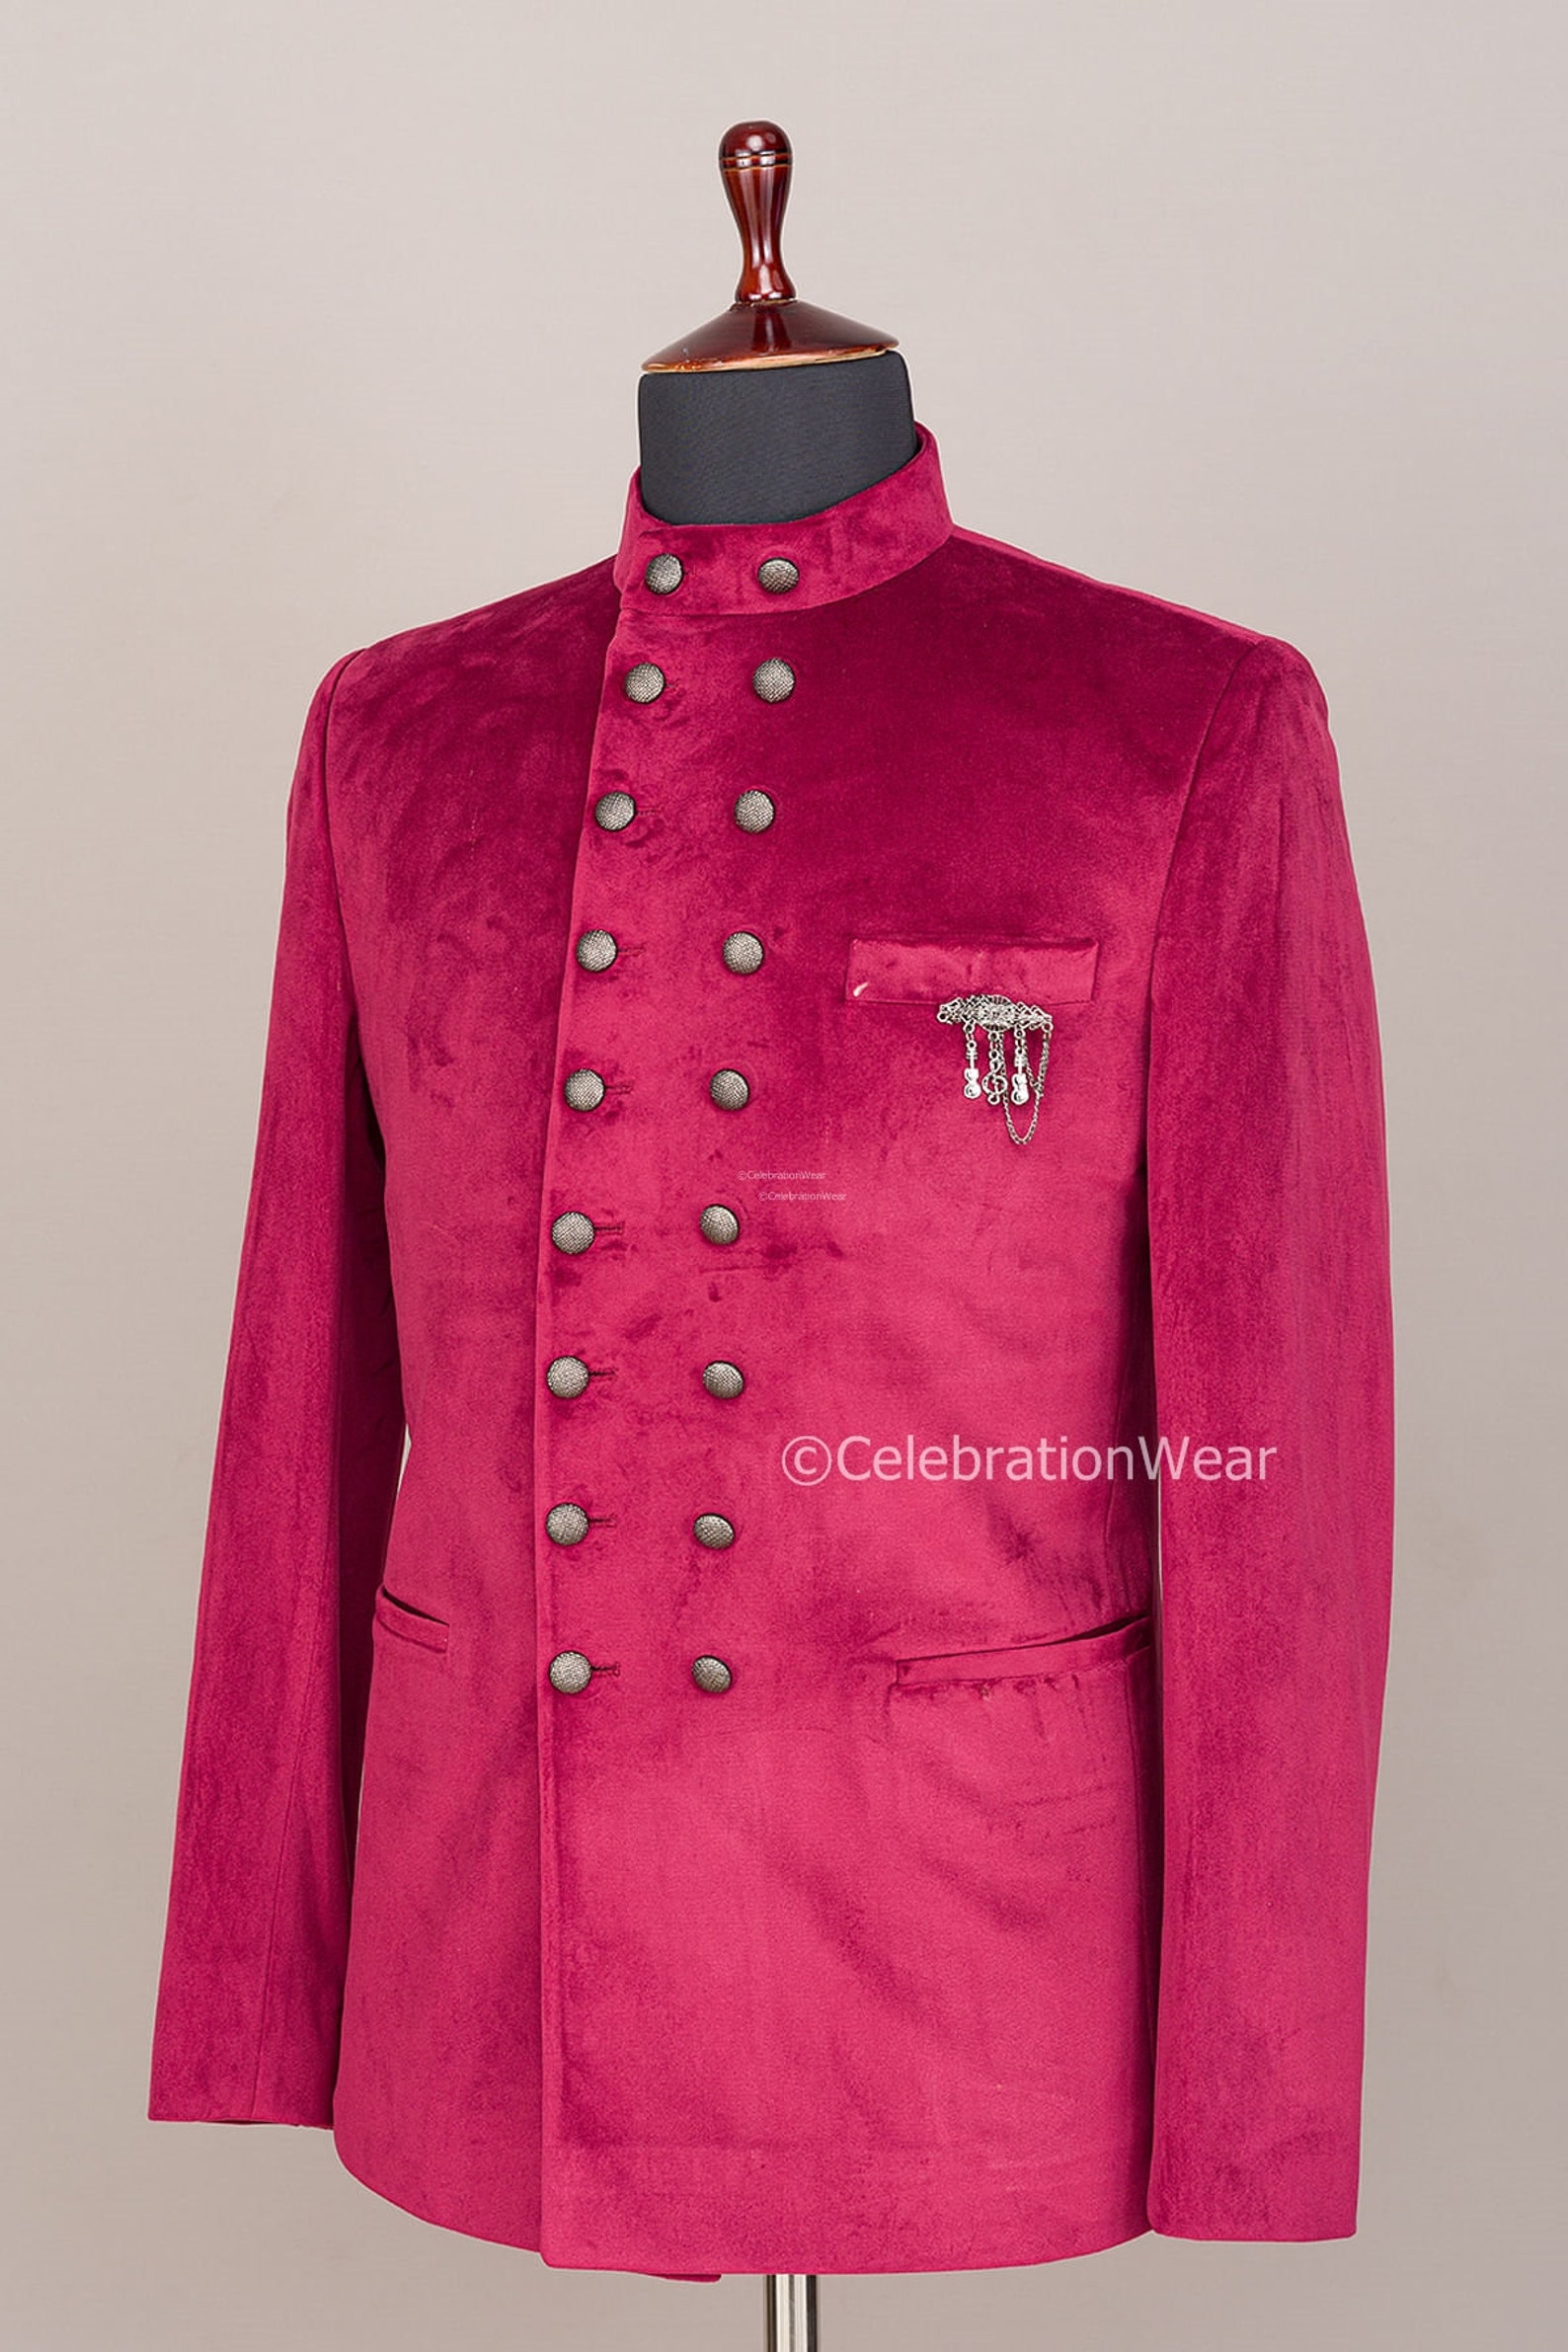 HOT PINK JODHPURI Coat, Hot Pink Suit Men, Groom Hot Pink Suit, Hot ...